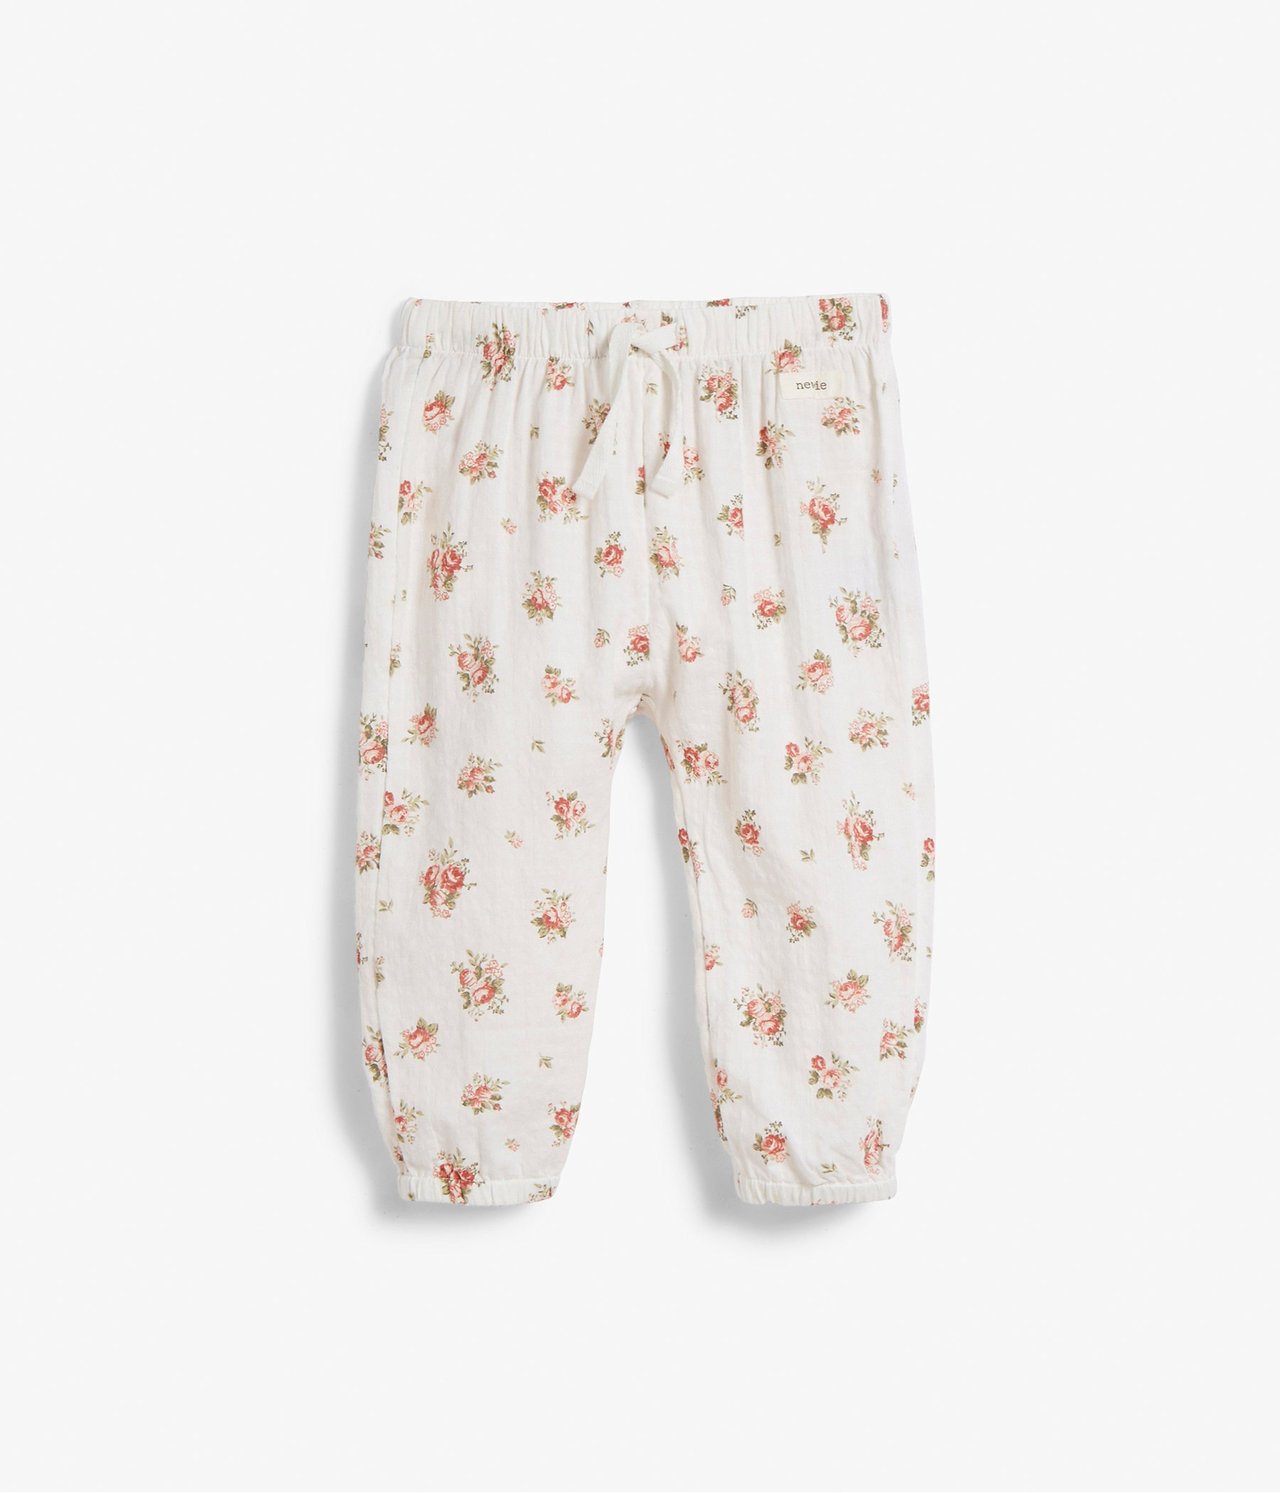 Kukkakuvioiset vauvojen housut